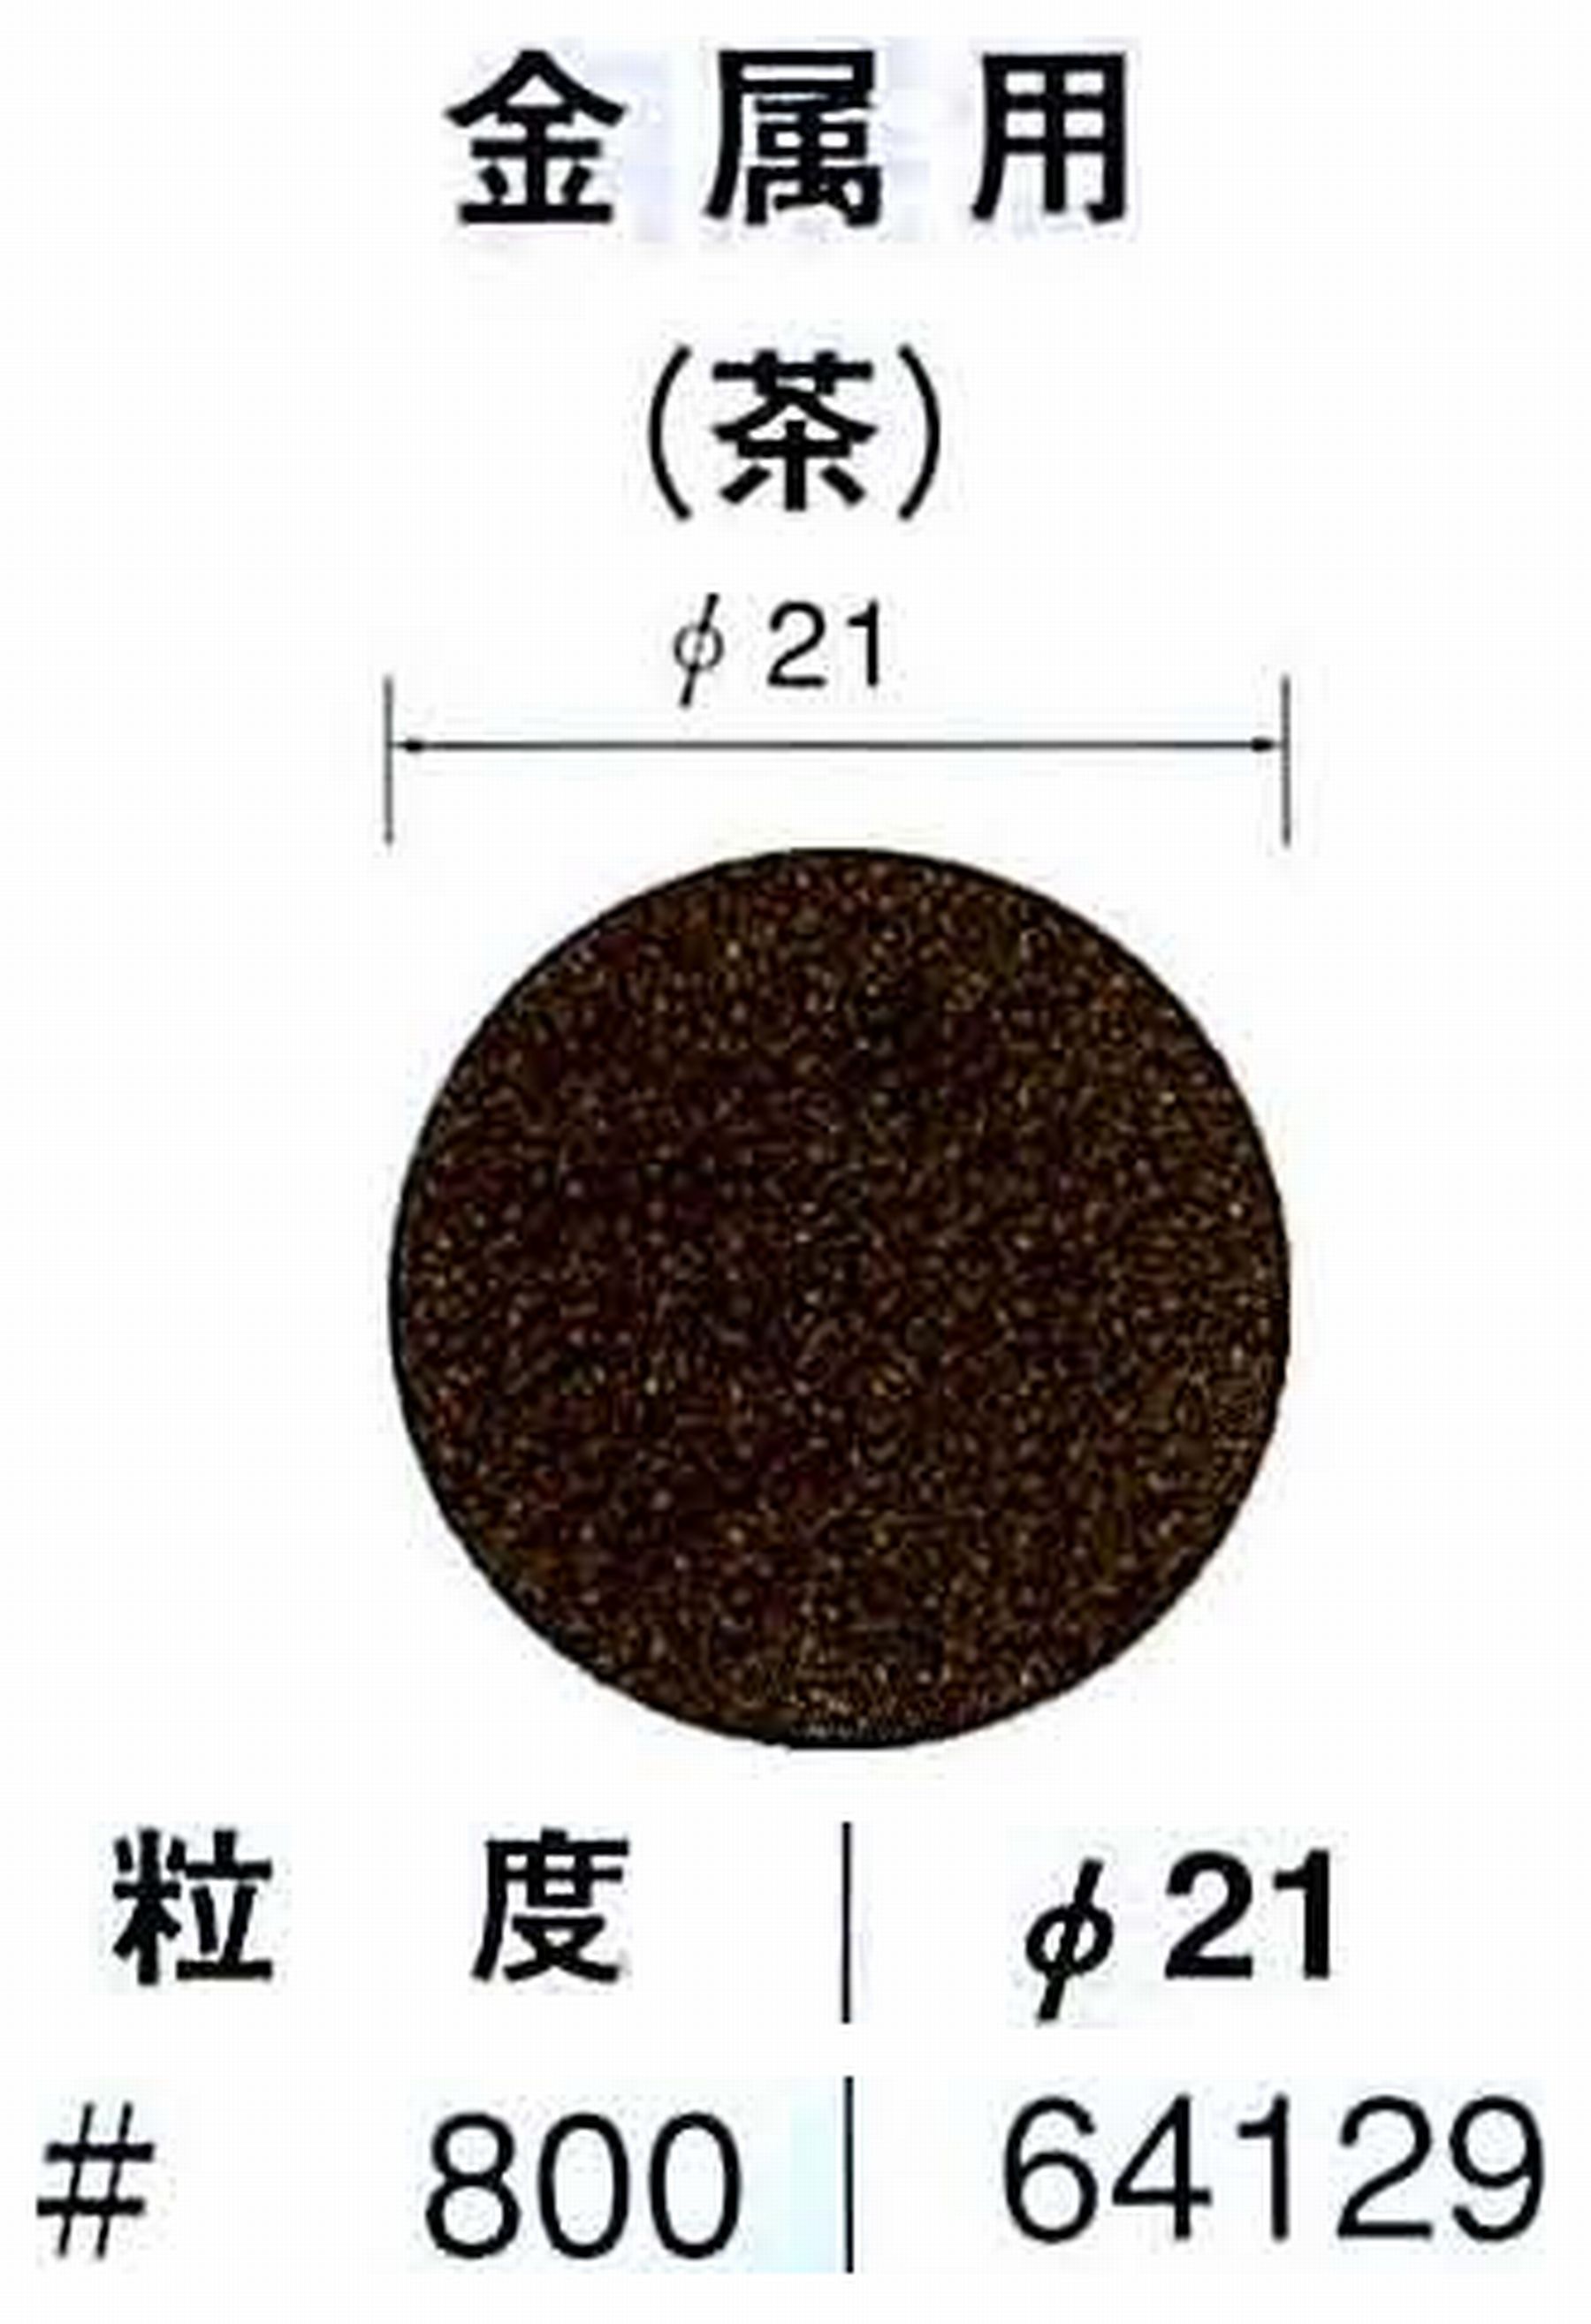 ナカニシ/NAKANISHI アングルグラインダ(電動・エアー) アングルアタッチメント専用工具 サンドペーパーディスク(布基材タイプ)裏面のり処理 64129